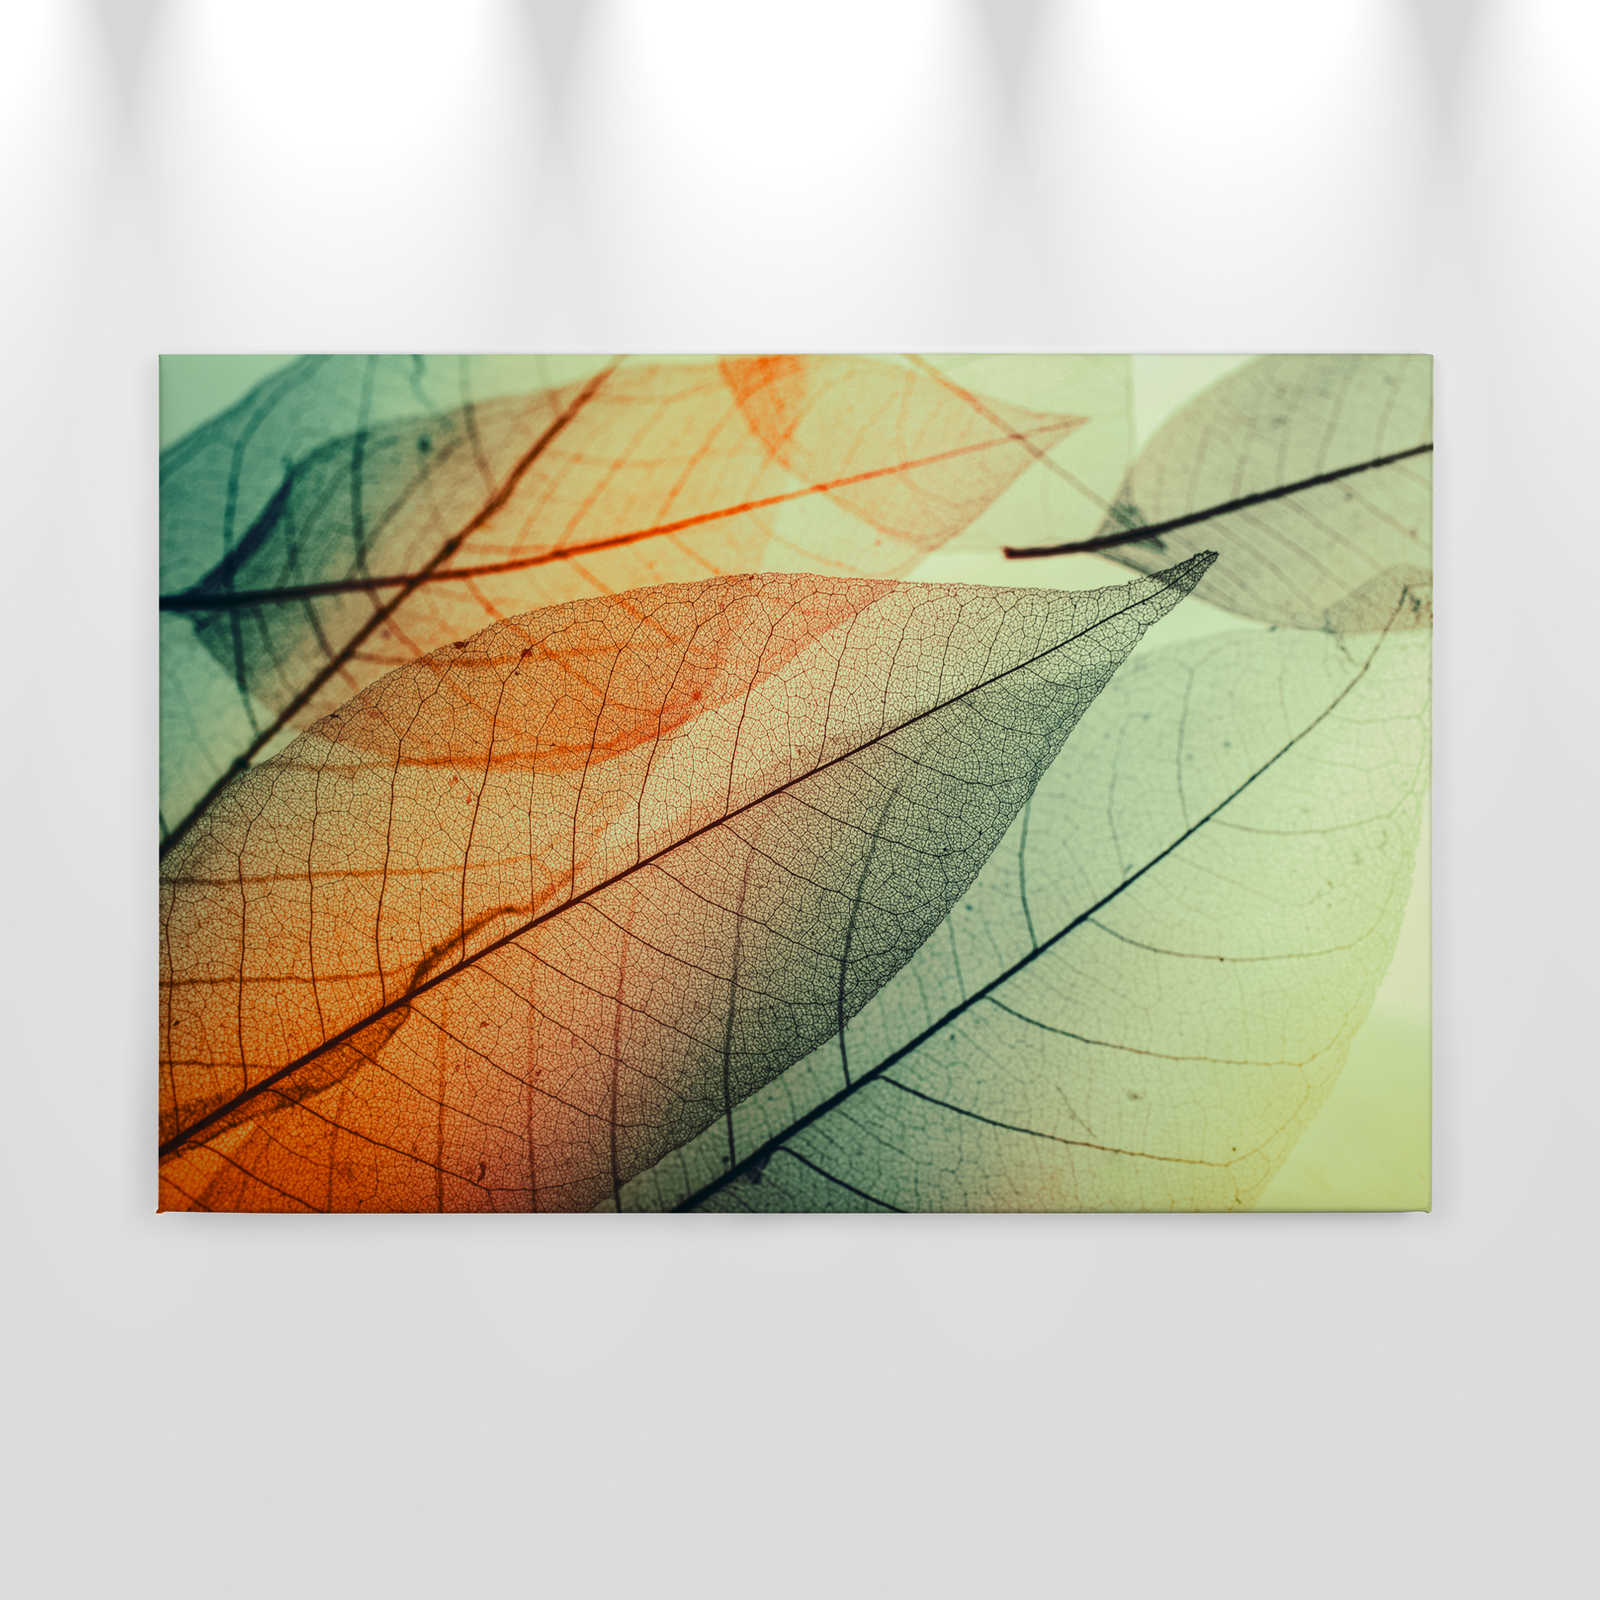             Toile avec motif de feuilles - 0,90 m x 0,60 m
        